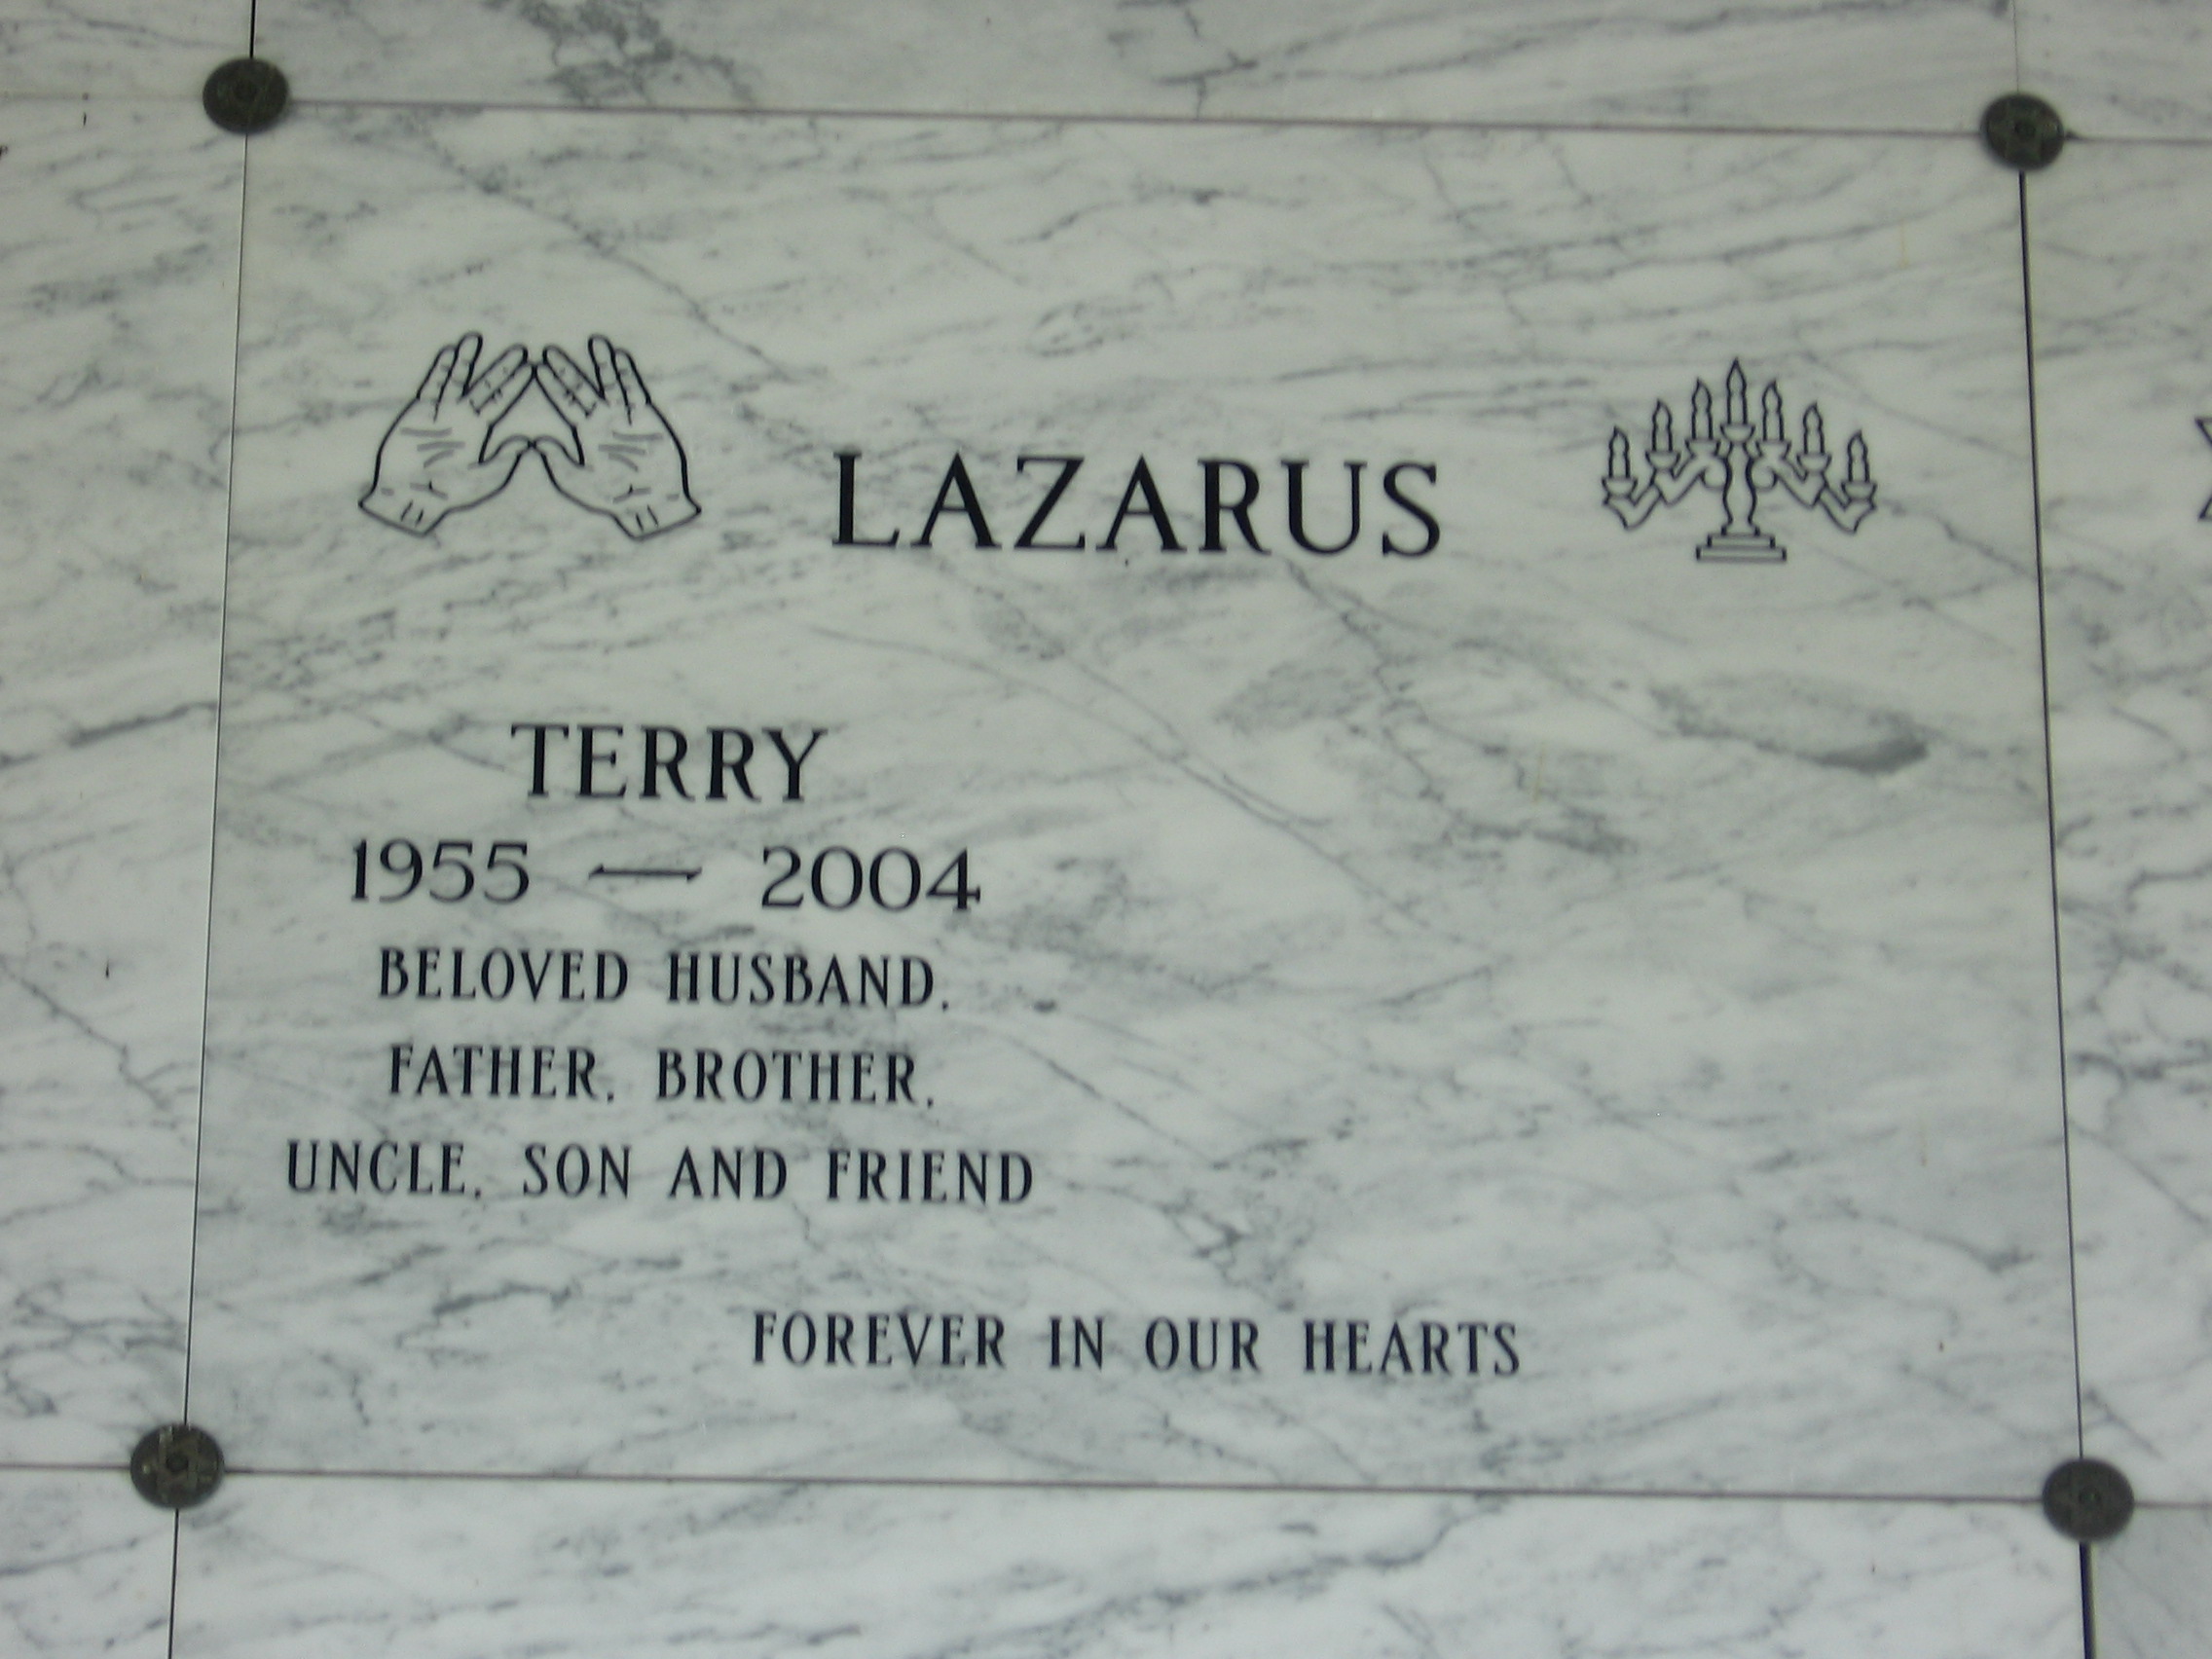 Terry Lazarus